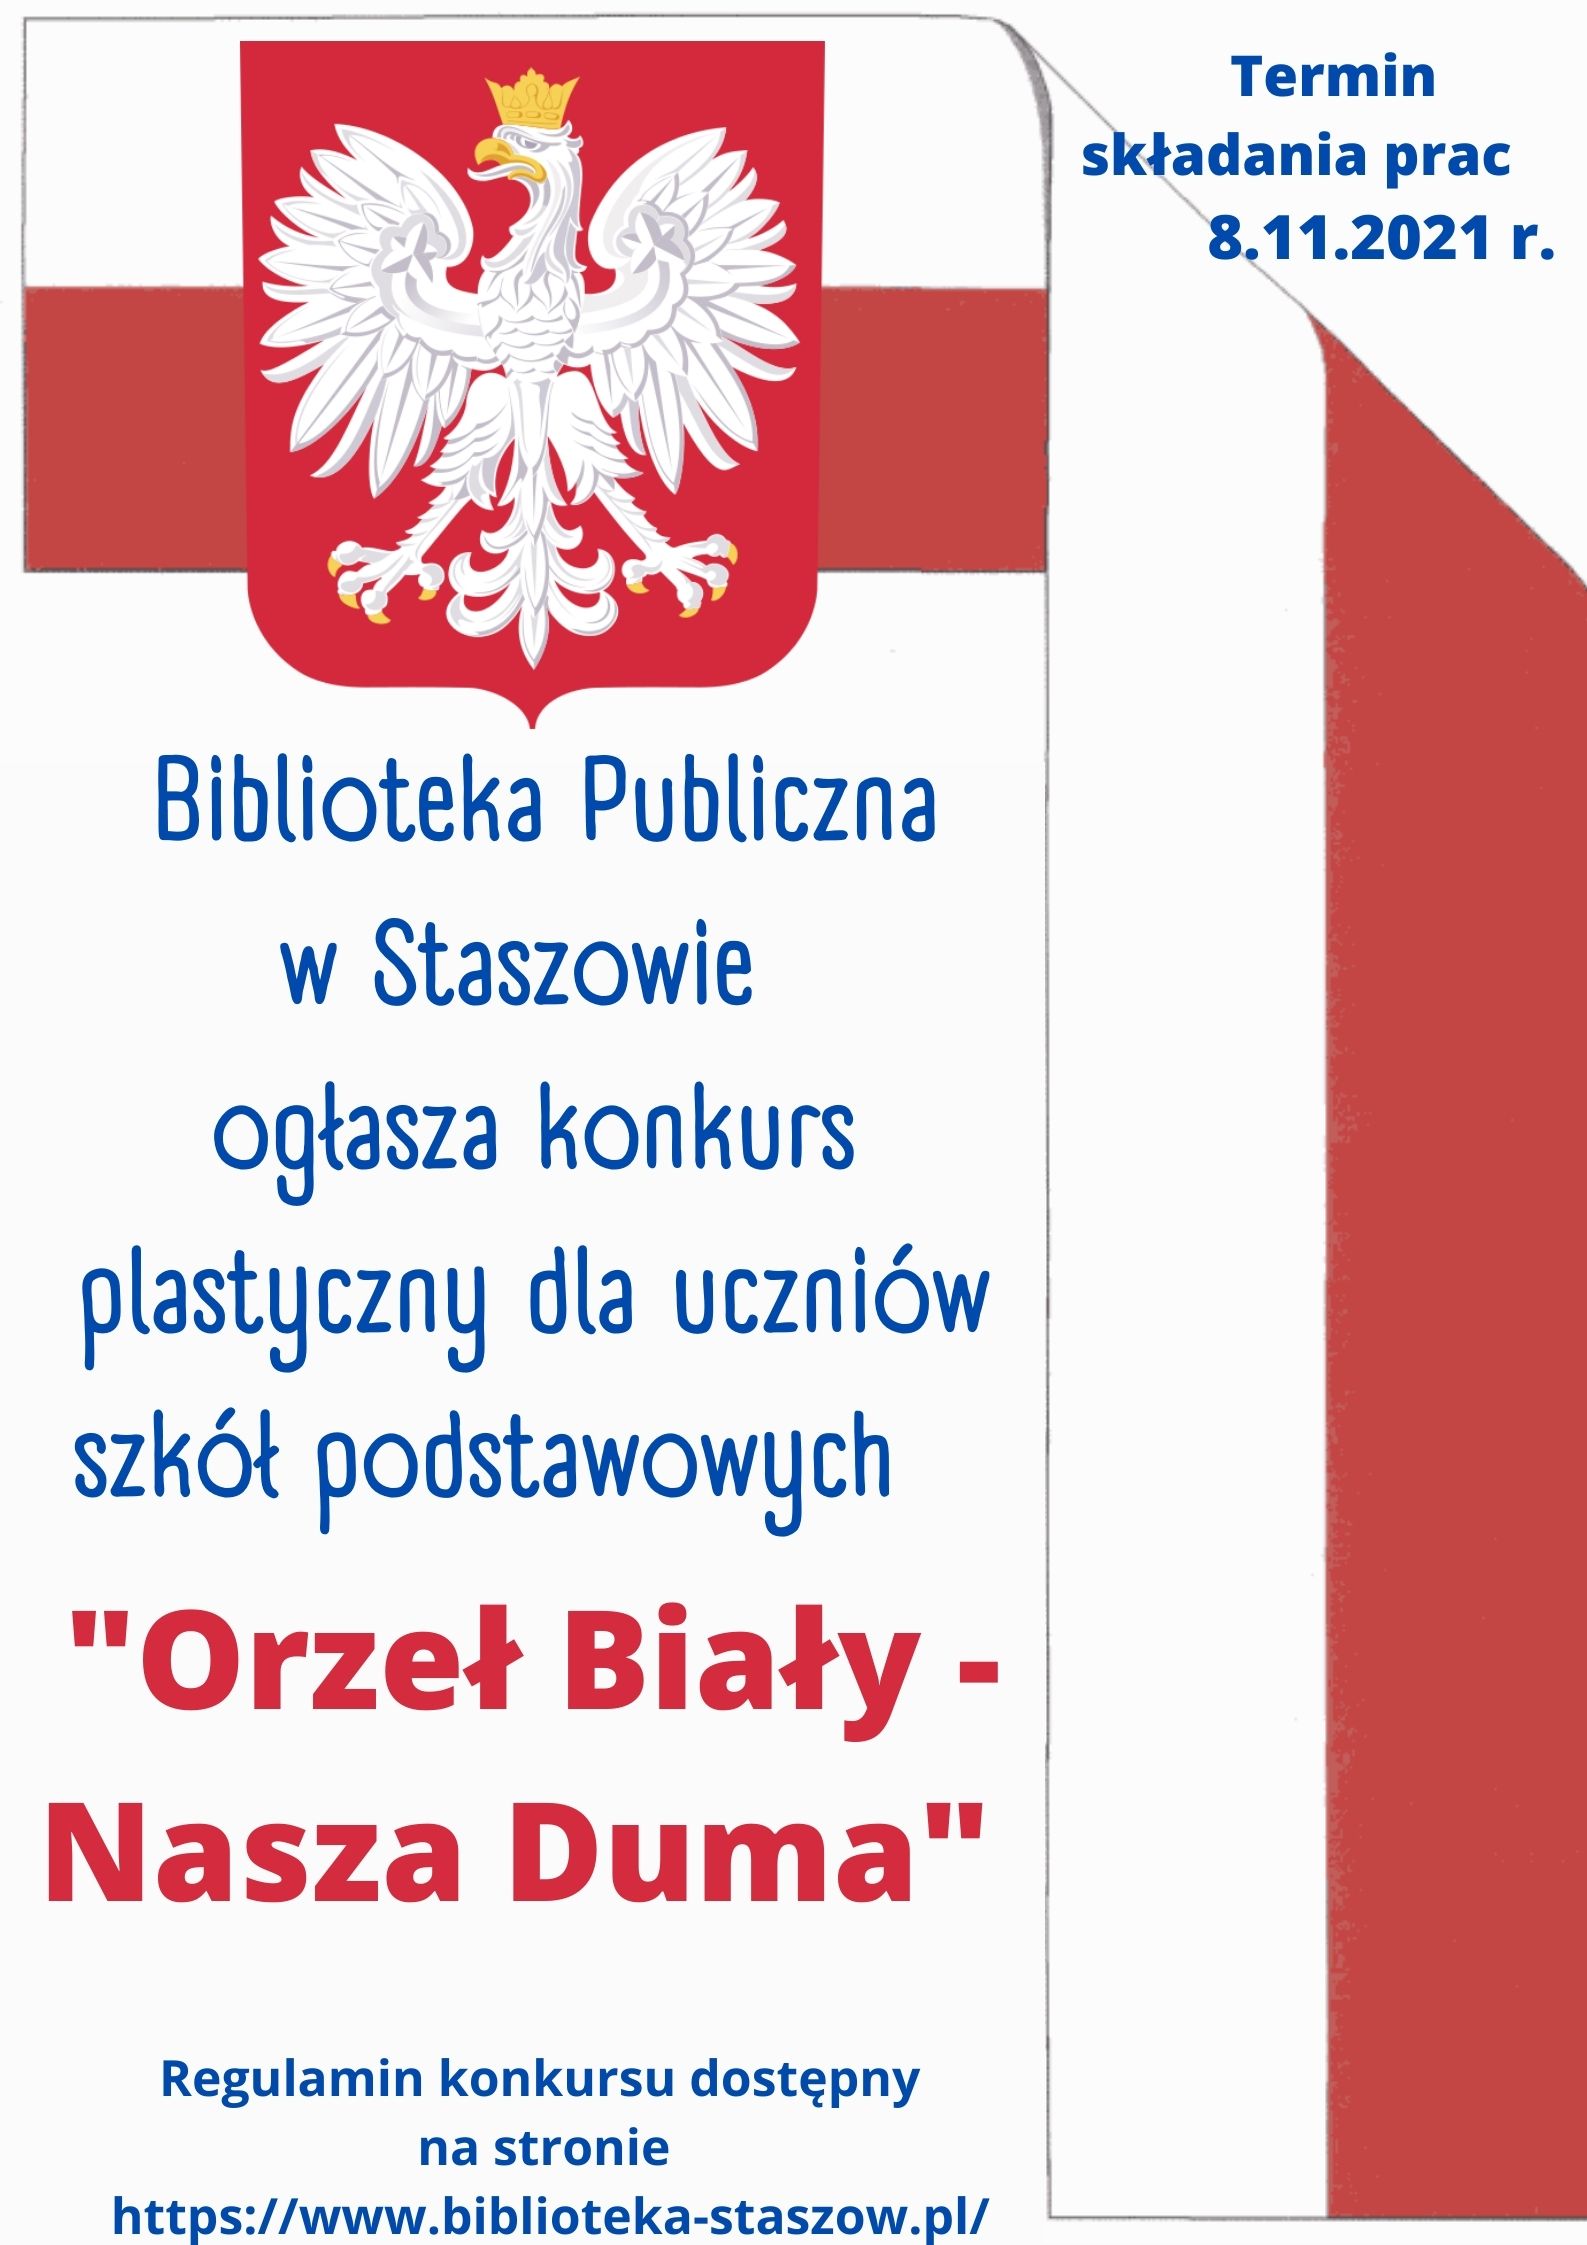 Plakat: Biblioteka Publiczna w Staszowie ogłasza konkurs plastyczny dla uczniów szkół podstawowych 